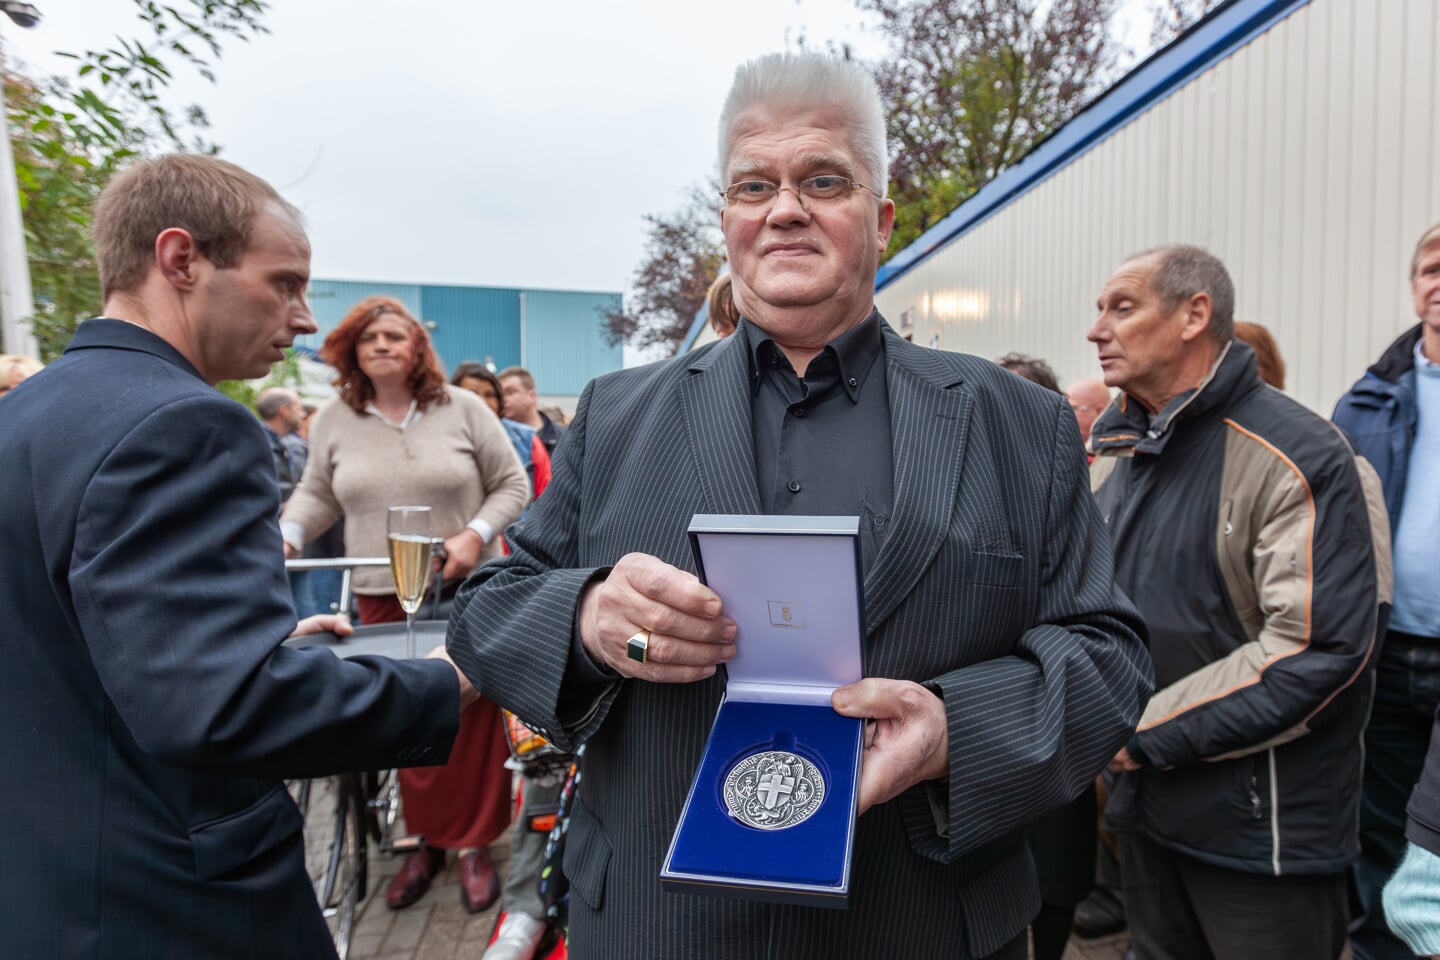 In 2009 ontving Joop van Ommen de Erepenning van de gemeente Zwolle als blijk van waardering en erkentelijkheid voor zijn bijzondere en langdurige verdiensten voor de stad Zwolle